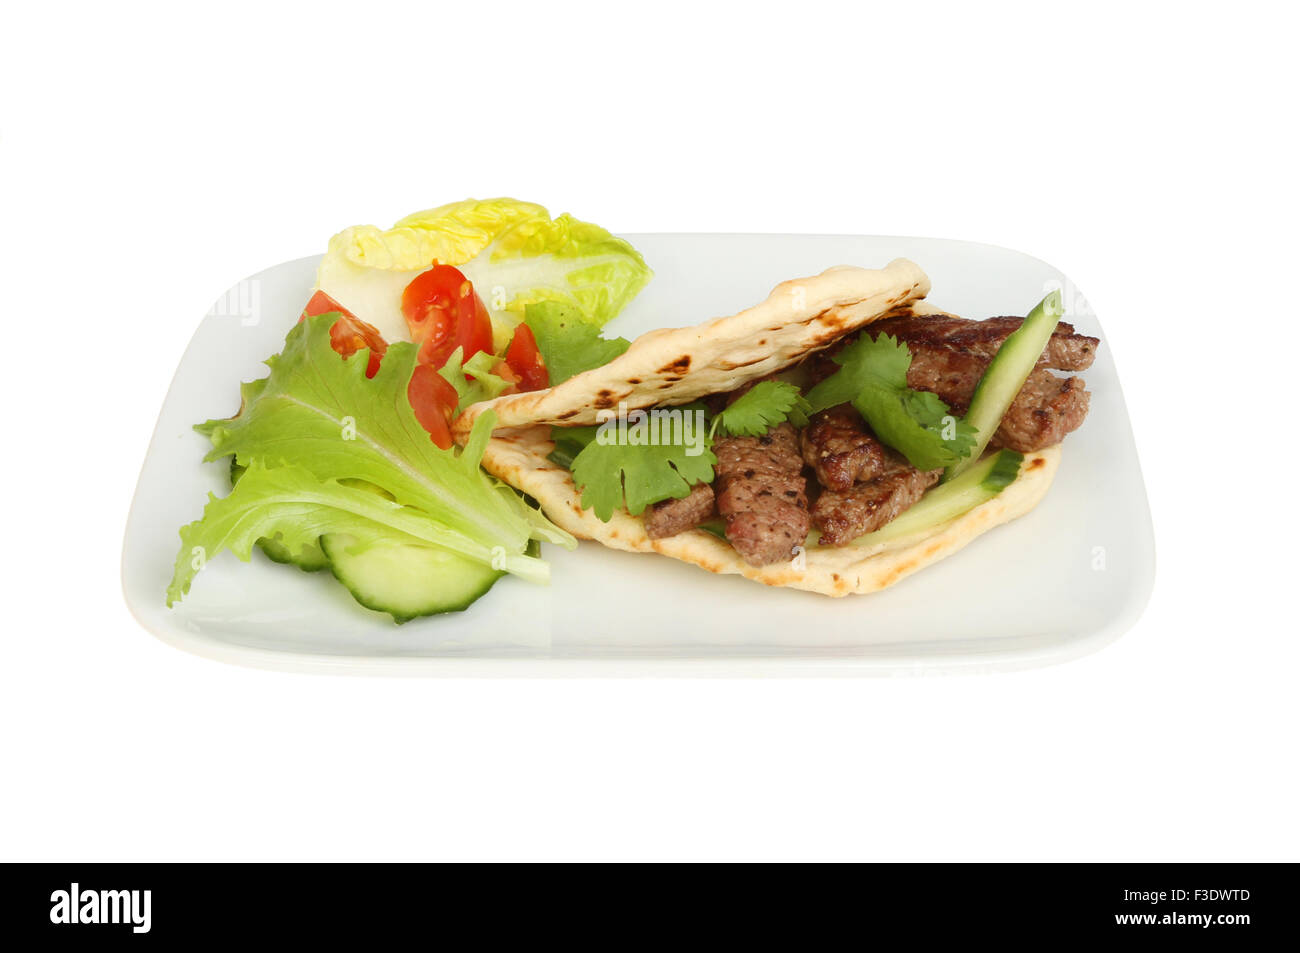 Fried steak minute dans un pain plat style kebab avec de la salade sur une assiette blanche contre isolés Banque D'Images